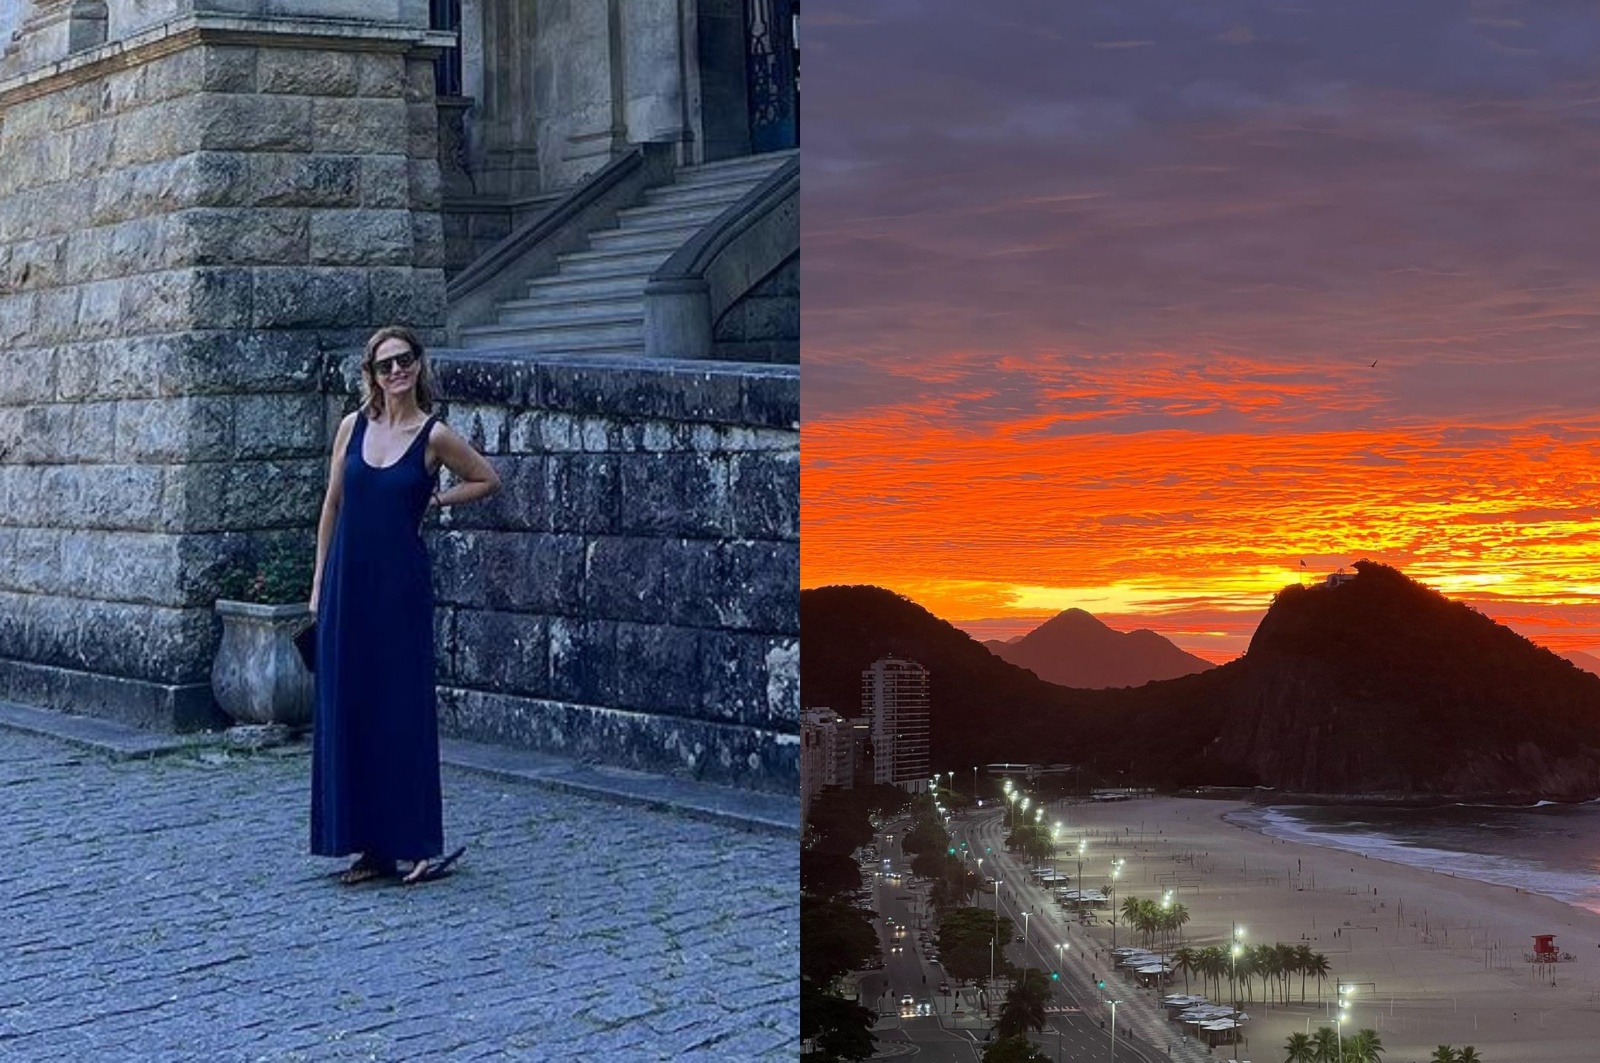 Cristina Ferreira passeia no Rio de Janeiro: "Durante anos sonhei com a vinda"